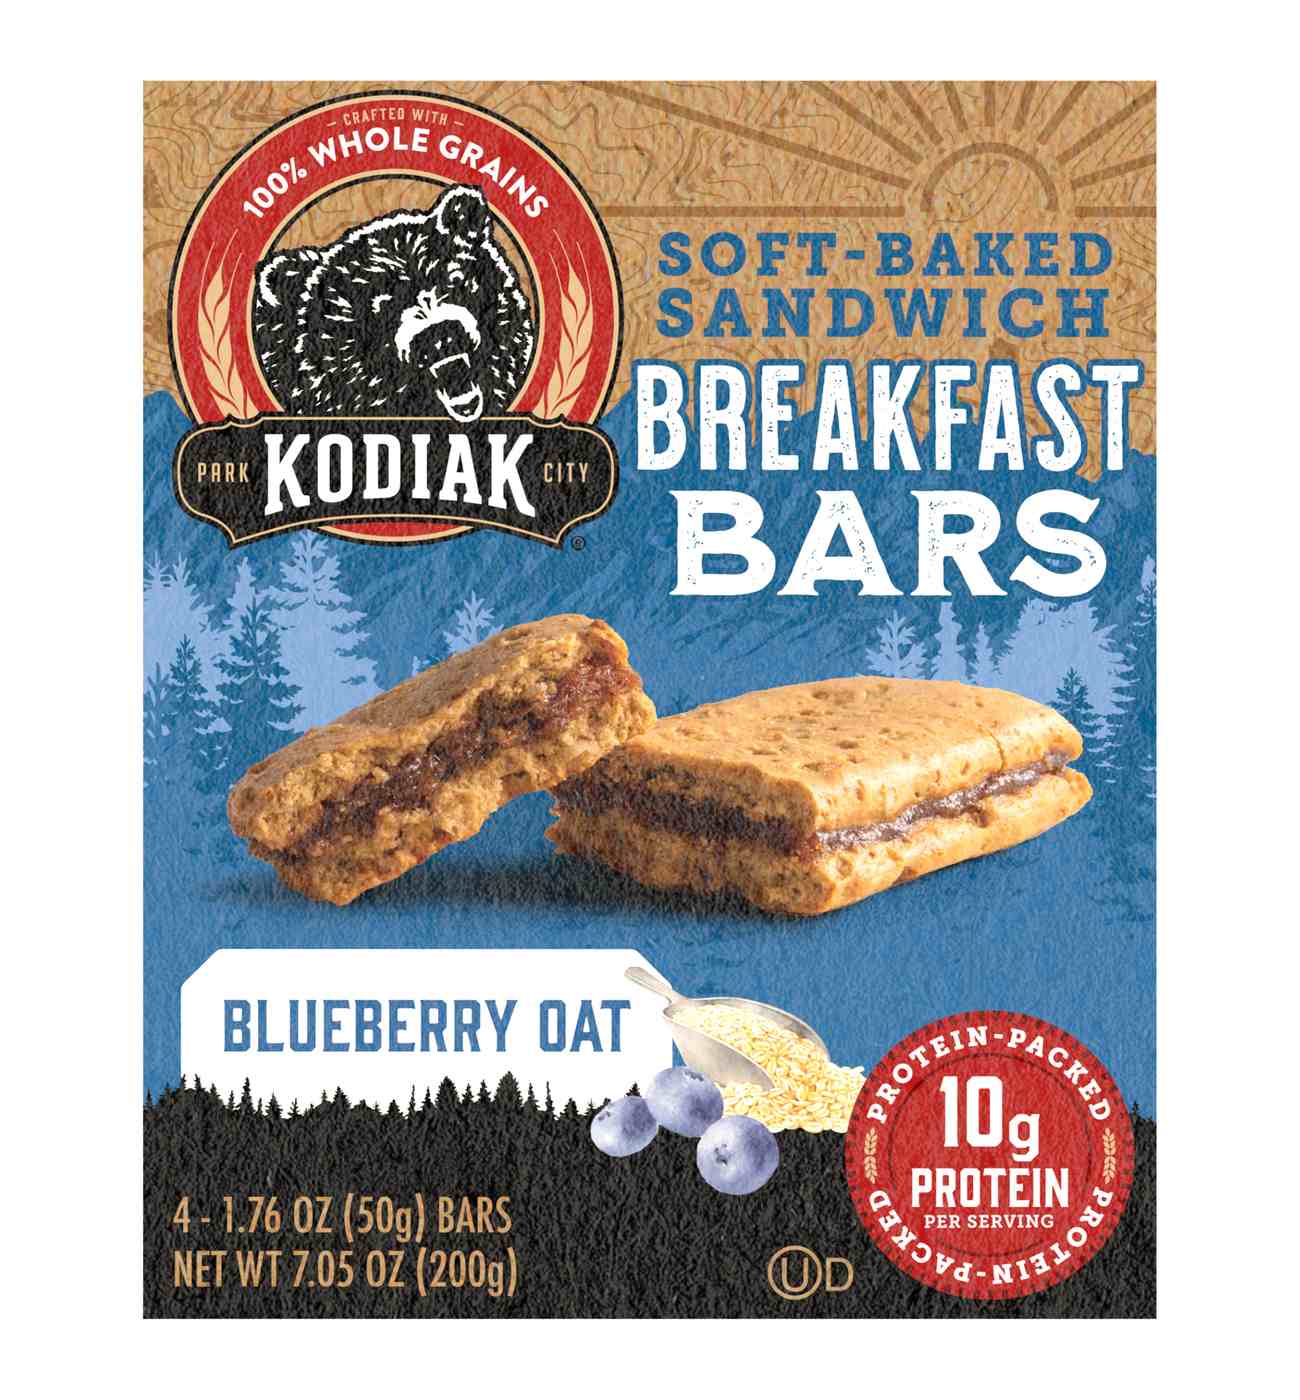 Kodiak Cakes 10g Protein Soft Baked Sandwich Breakfast Bars - Blueberry Oat; image 1 of 2